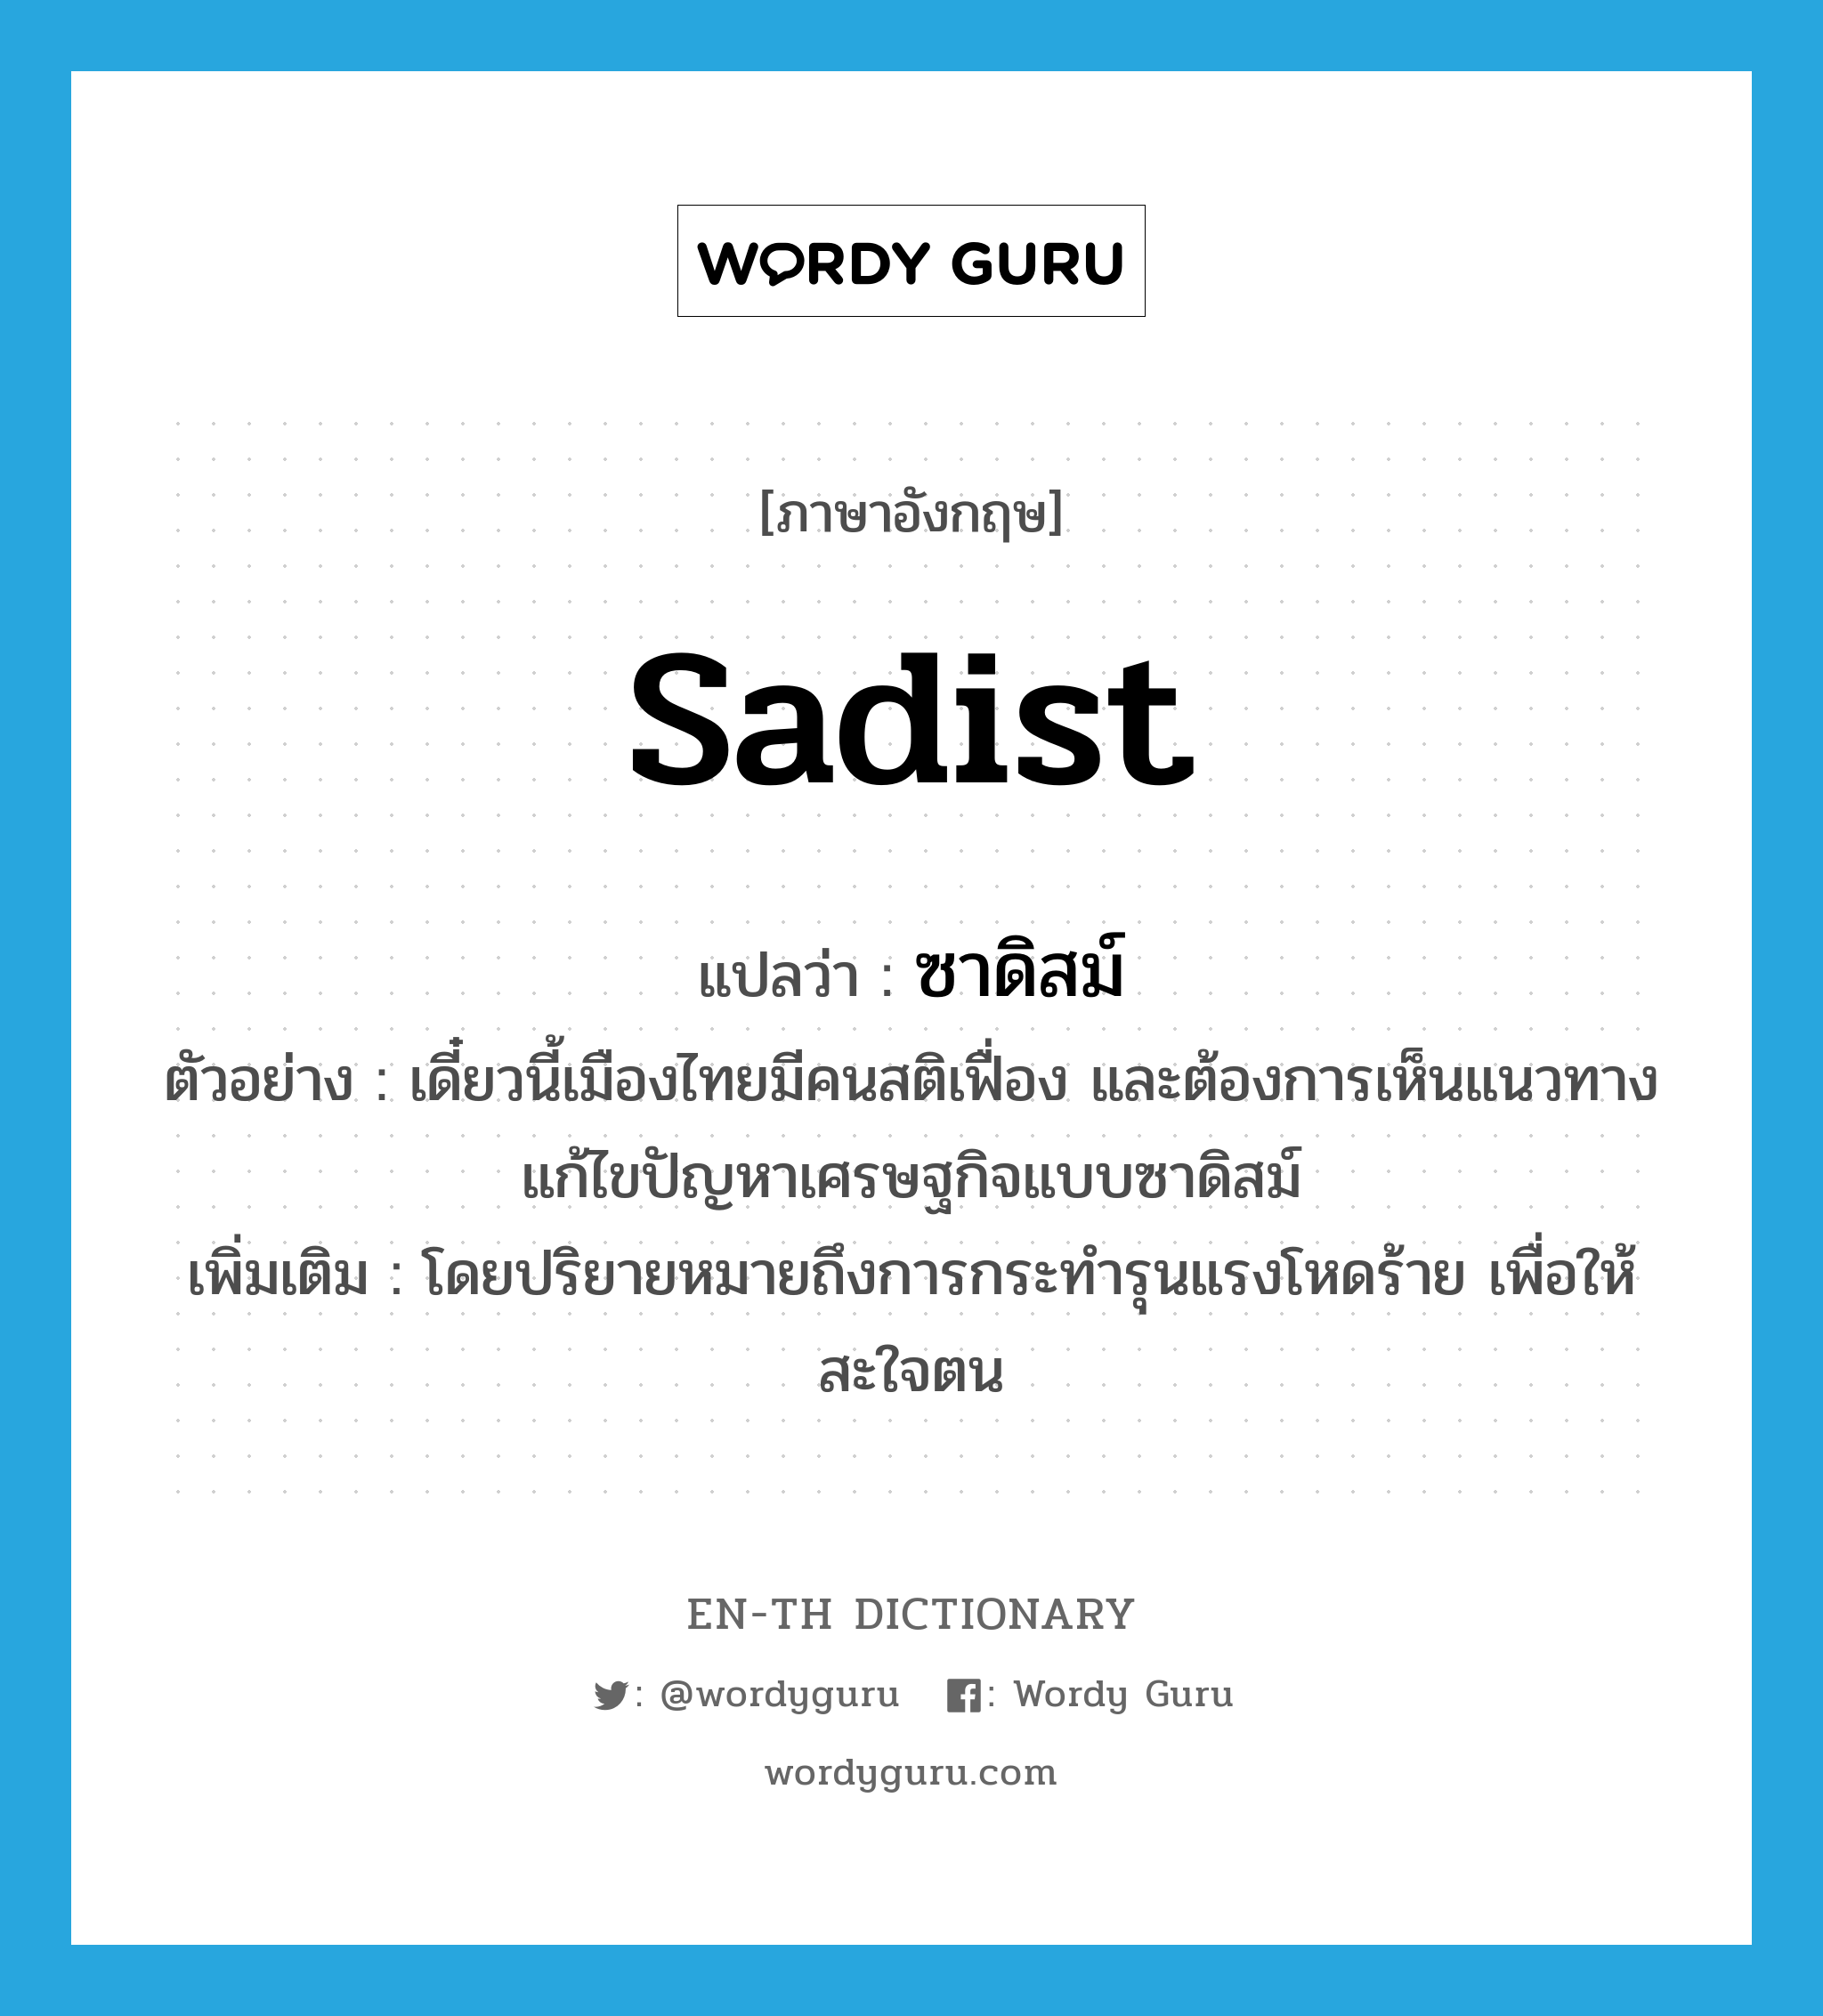 sadist แปลว่า?, คำศัพท์ภาษาอังกฤษ sadist แปลว่า ซาดิสม์ ประเภท ADJ ตัวอย่าง เดี๋ยวนี้เมืองไทยมีคนสติเฟื่อง และต้องการเห็นแนวทางแก้ไขปัญหาเศรษฐกิจแบบซาดิสม์ เพิ่มเติม โดยปริยายหมายถึงการกระทำรุนแรงโหดร้าย เพื่อให้สะใจตน หมวด ADJ